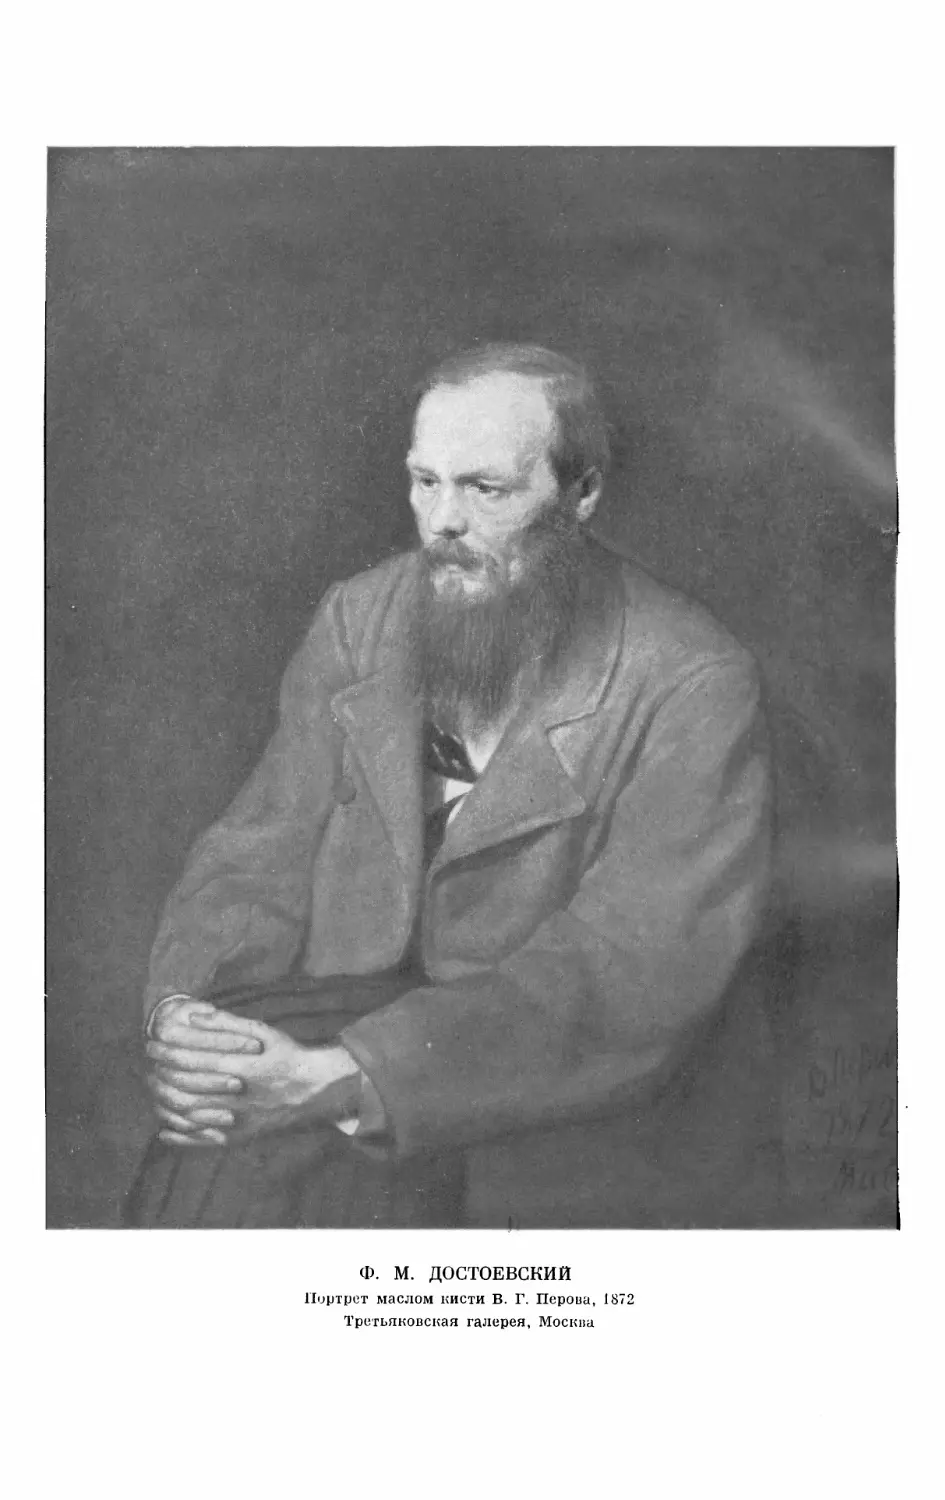 Вклейка. Ф. М. ДОСТОЕВСКИЙ. Портрет маслом кисти В. Г. Перова, 1872